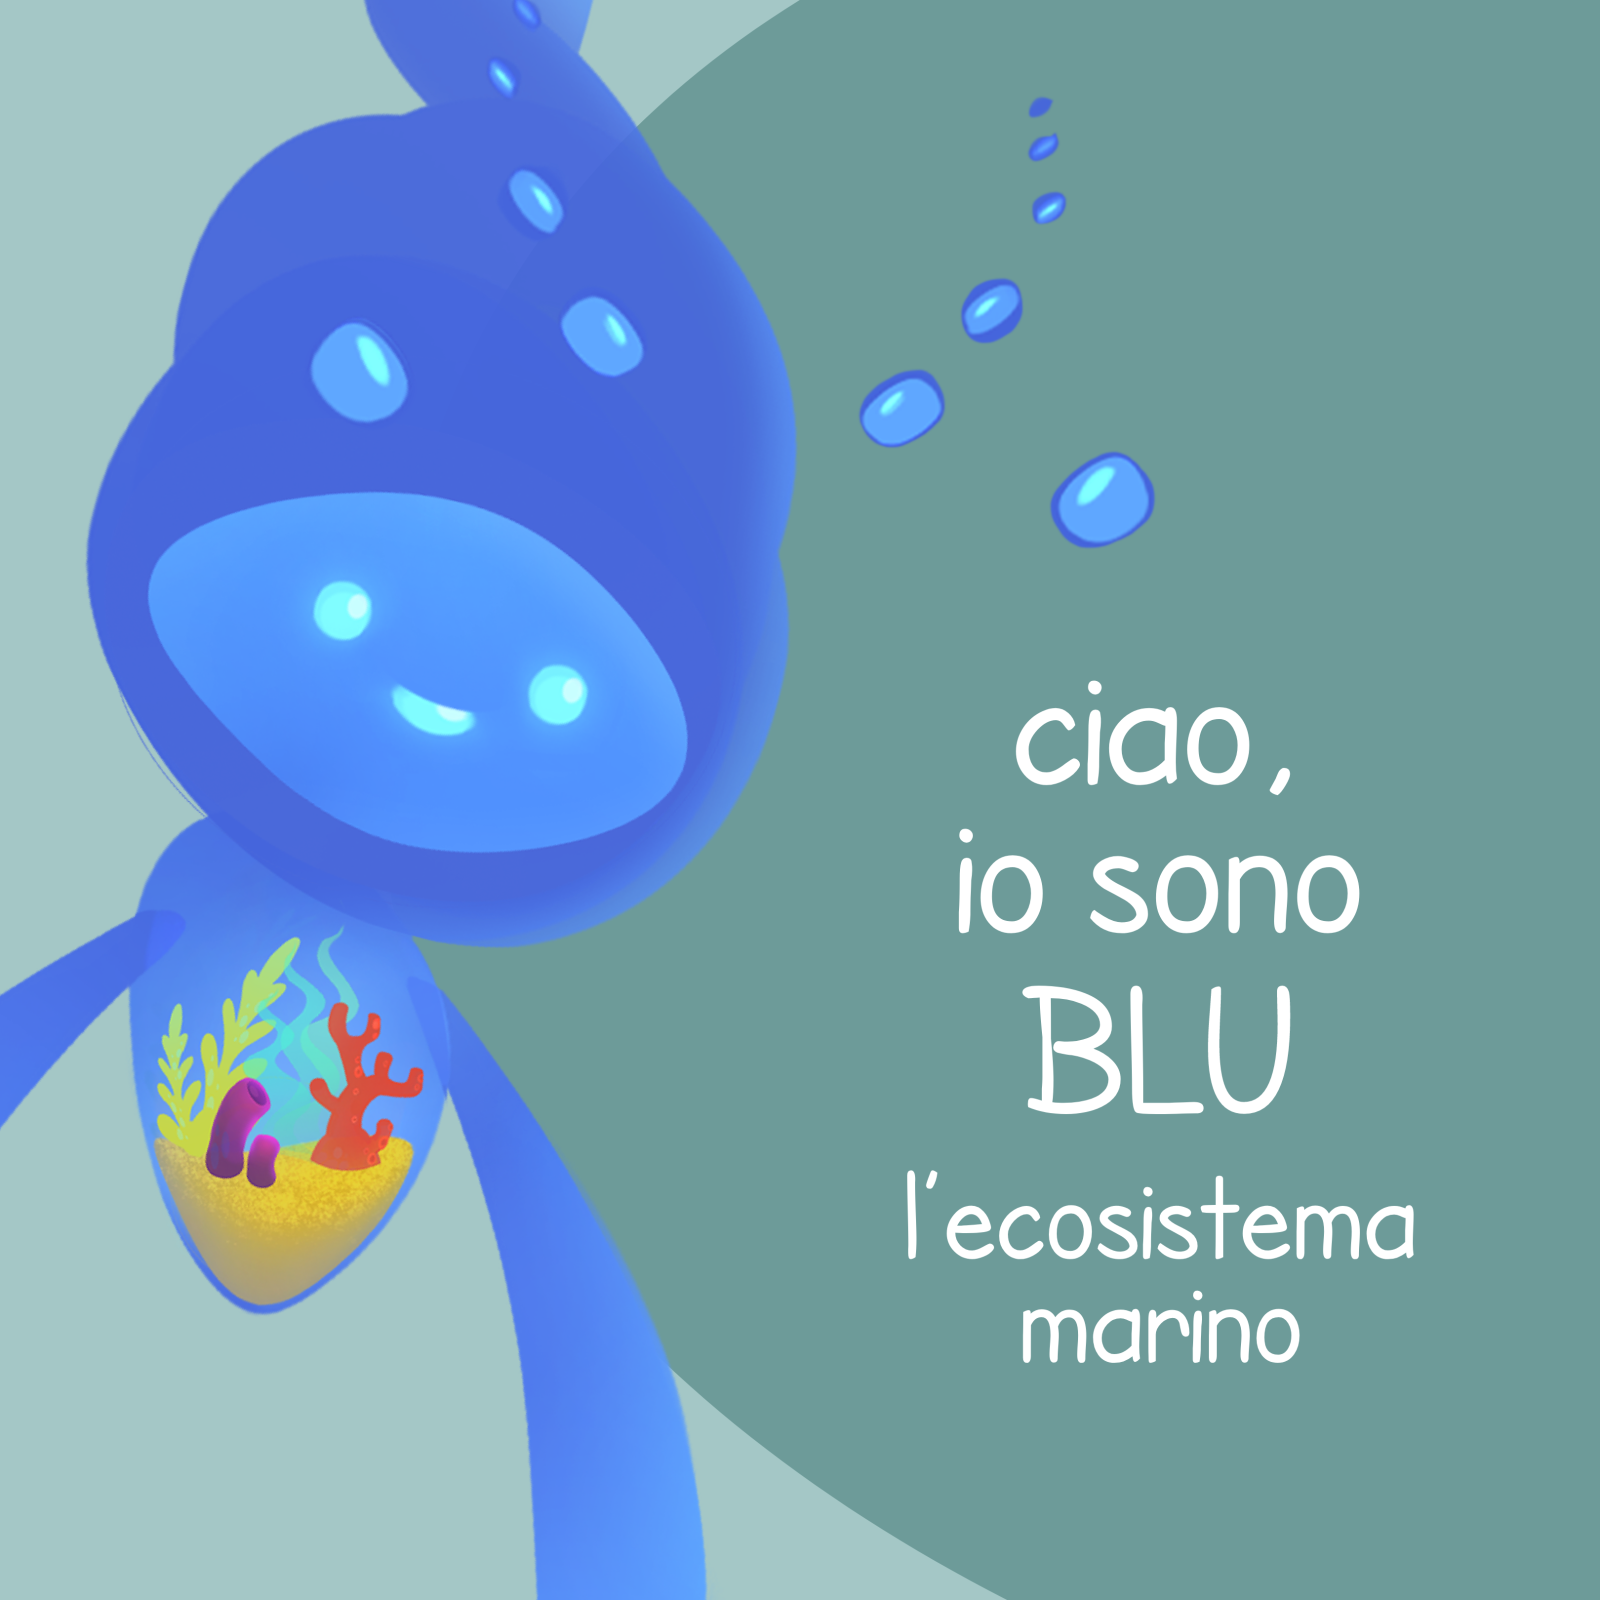 Disegno di Blu, personaggio inventato che rappresenta l'ecosistema marino, e che è la mascotte del progetto di ricerca Culturgame, un'esperienza game based per la valorizzazione dei beni culturali, di cui ETT è partner